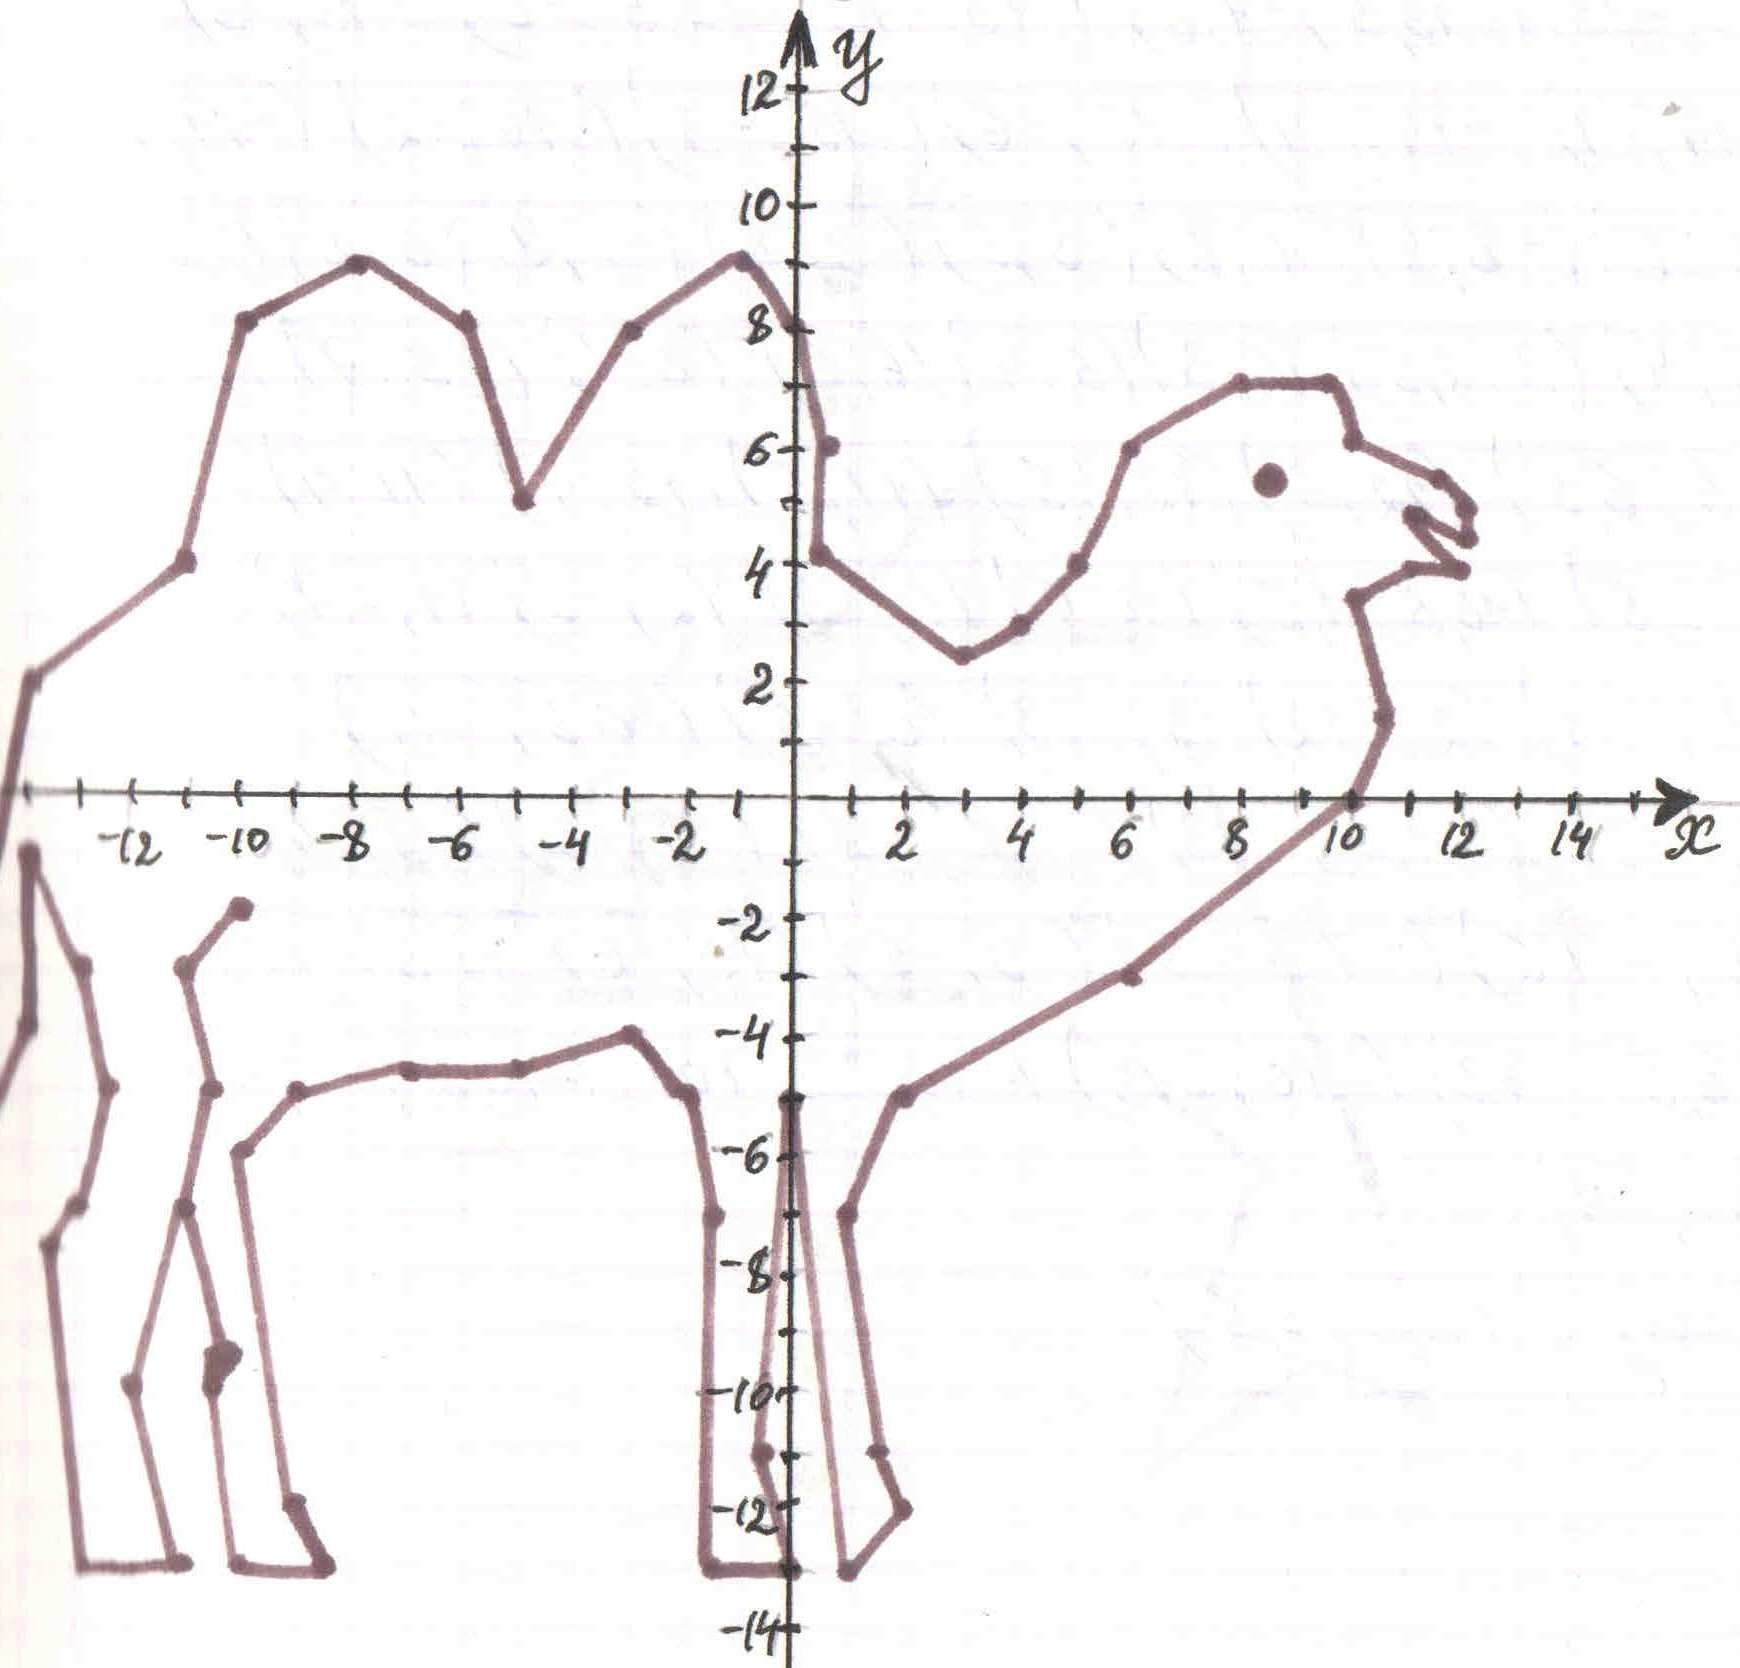 2 3 45 11 5. Координатные плоскости (-1,-7),(-5,-3),(-5,-3). Рисунок верблюда по координатам -10 - 2. Координатная плоскость (-4;6),(-3;5). Рисунок по координатам (-2;2),(-2;-4).